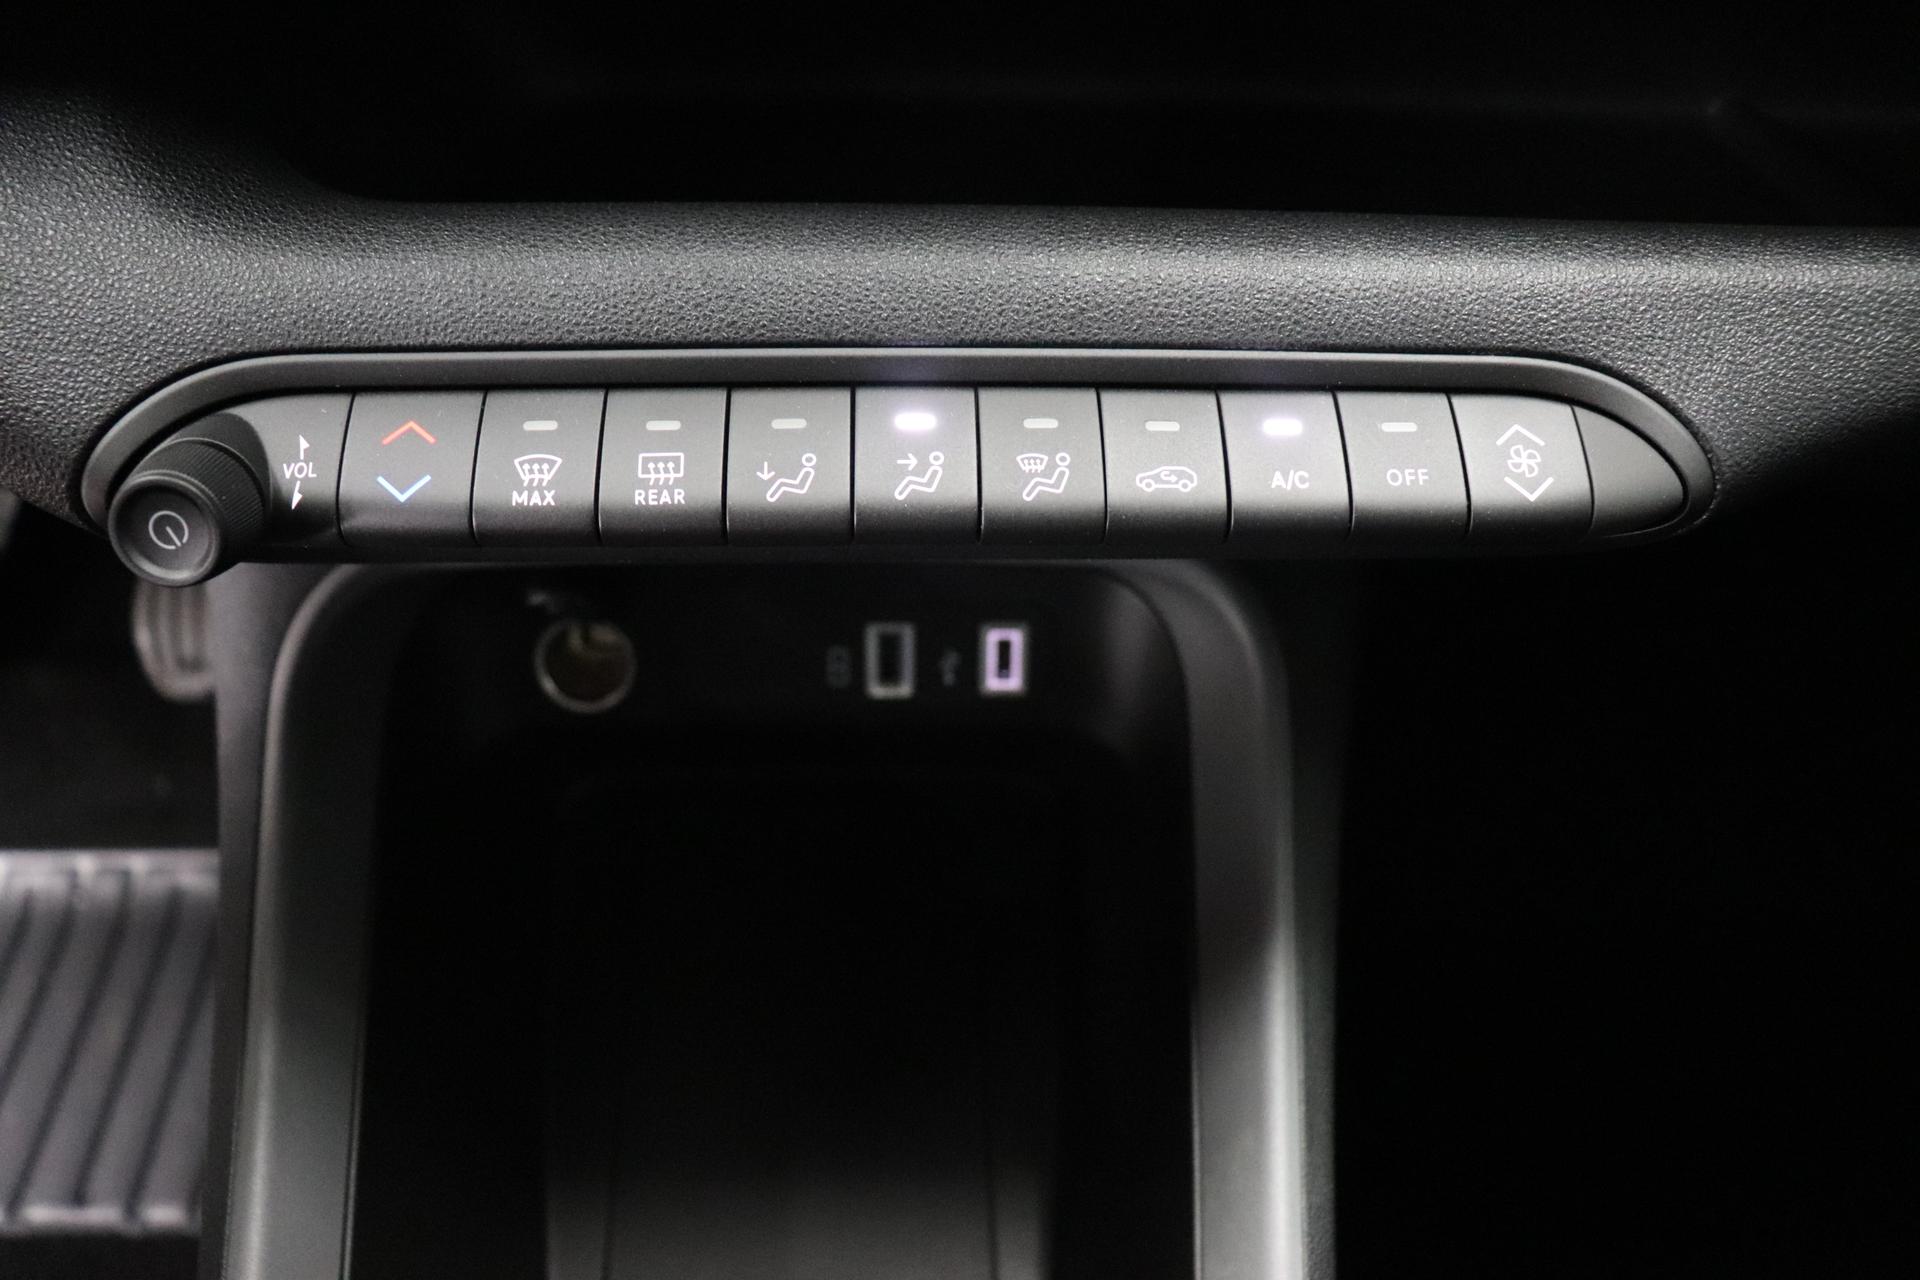 Jeep Avenger Longitude 1.2 GSE Turbo GDI, Klimaanlage, Navigationssystem,  Volldigitales Kombiinstrument (Virtual Cockpit), AppleCarPlay&Android Auto,  Tempomat, Verkehrszeichenerkennung, Spurhalteassistent, LED Scheinwerfer,  16-Leichtmetallfelgen, uvm